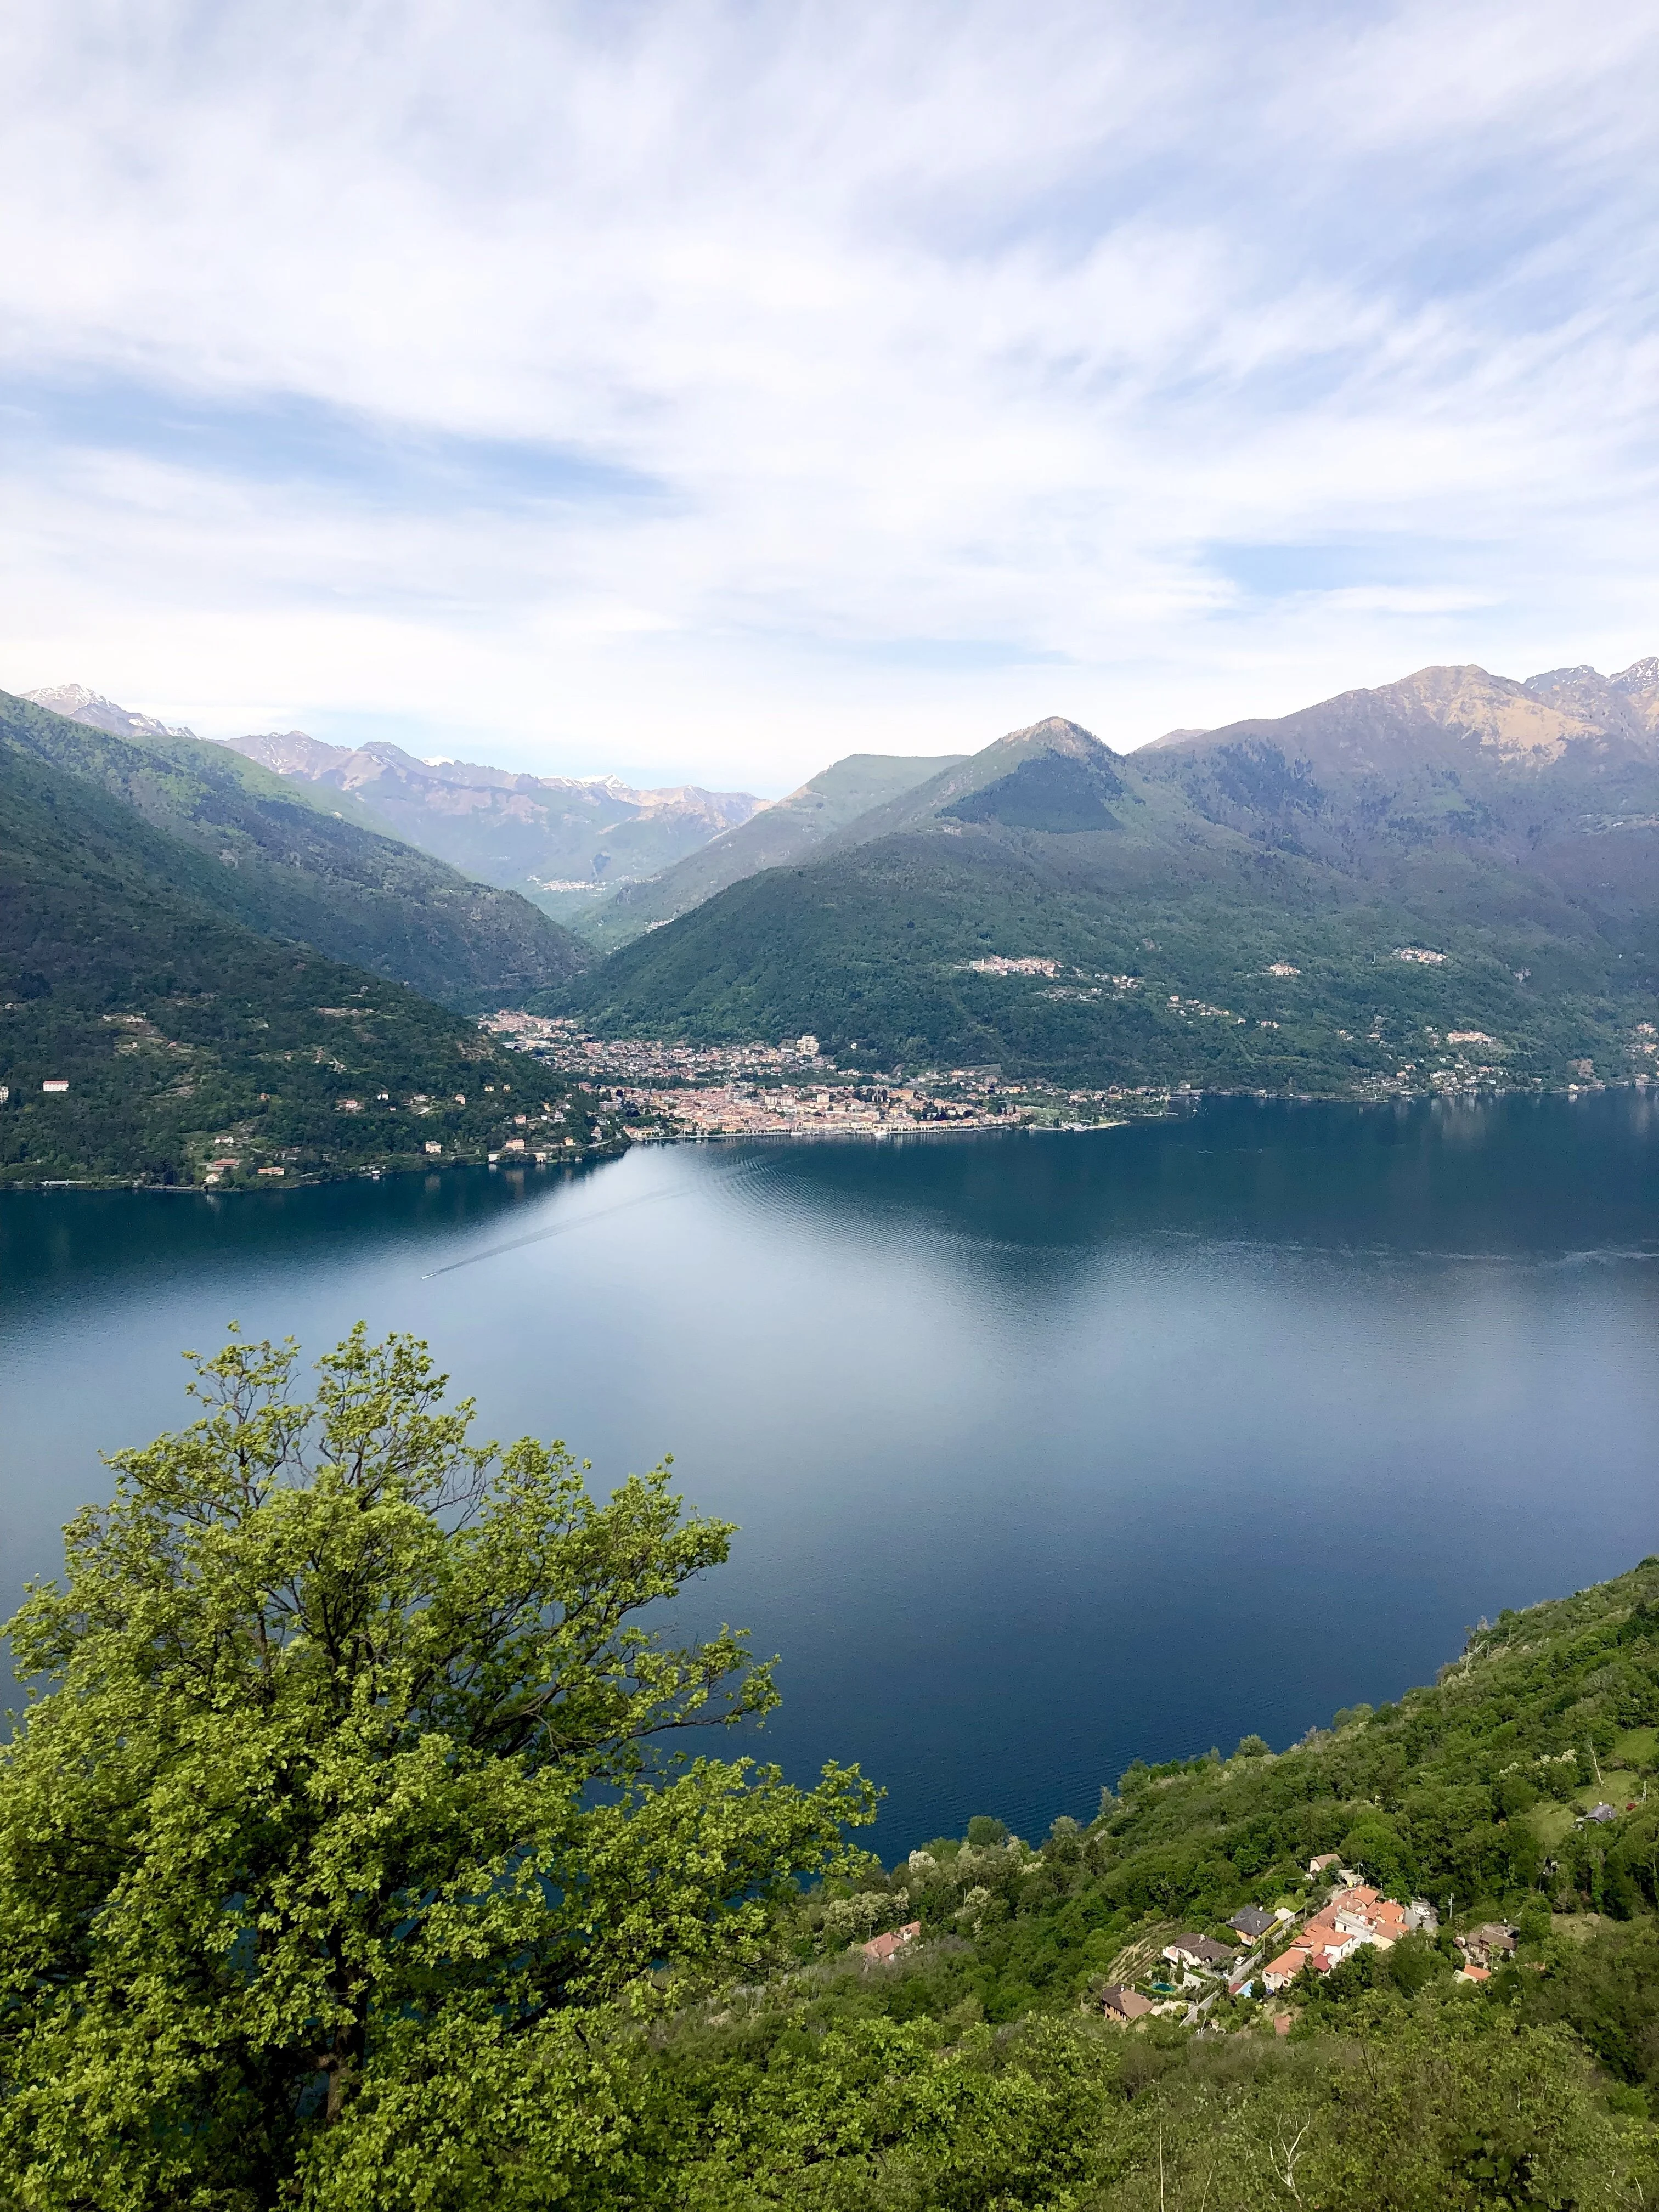 Visit Maccagno in Lake Maggiore on the Italian lakes